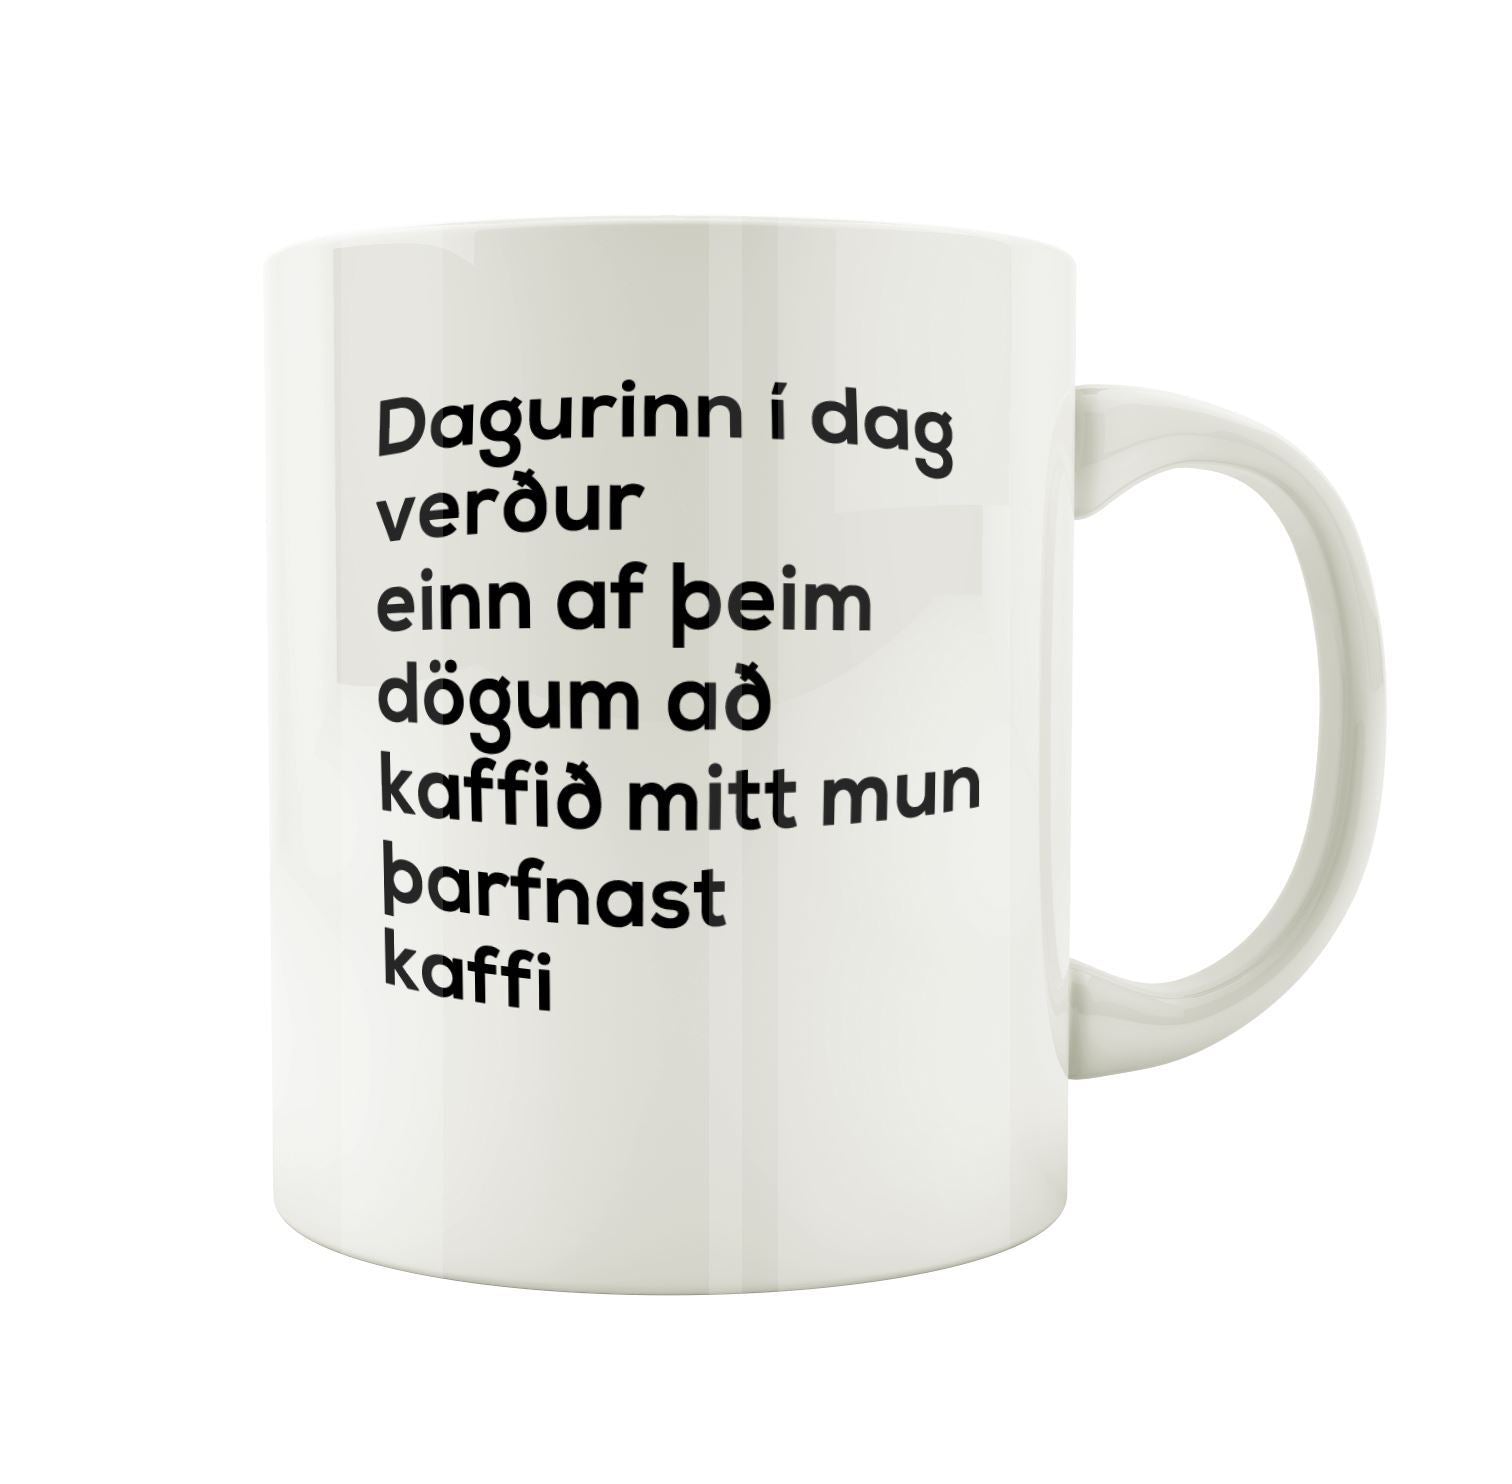 Dagurinn í dag verður einn af þeim dögum að kaffið mitt mun þarfnast kaffi